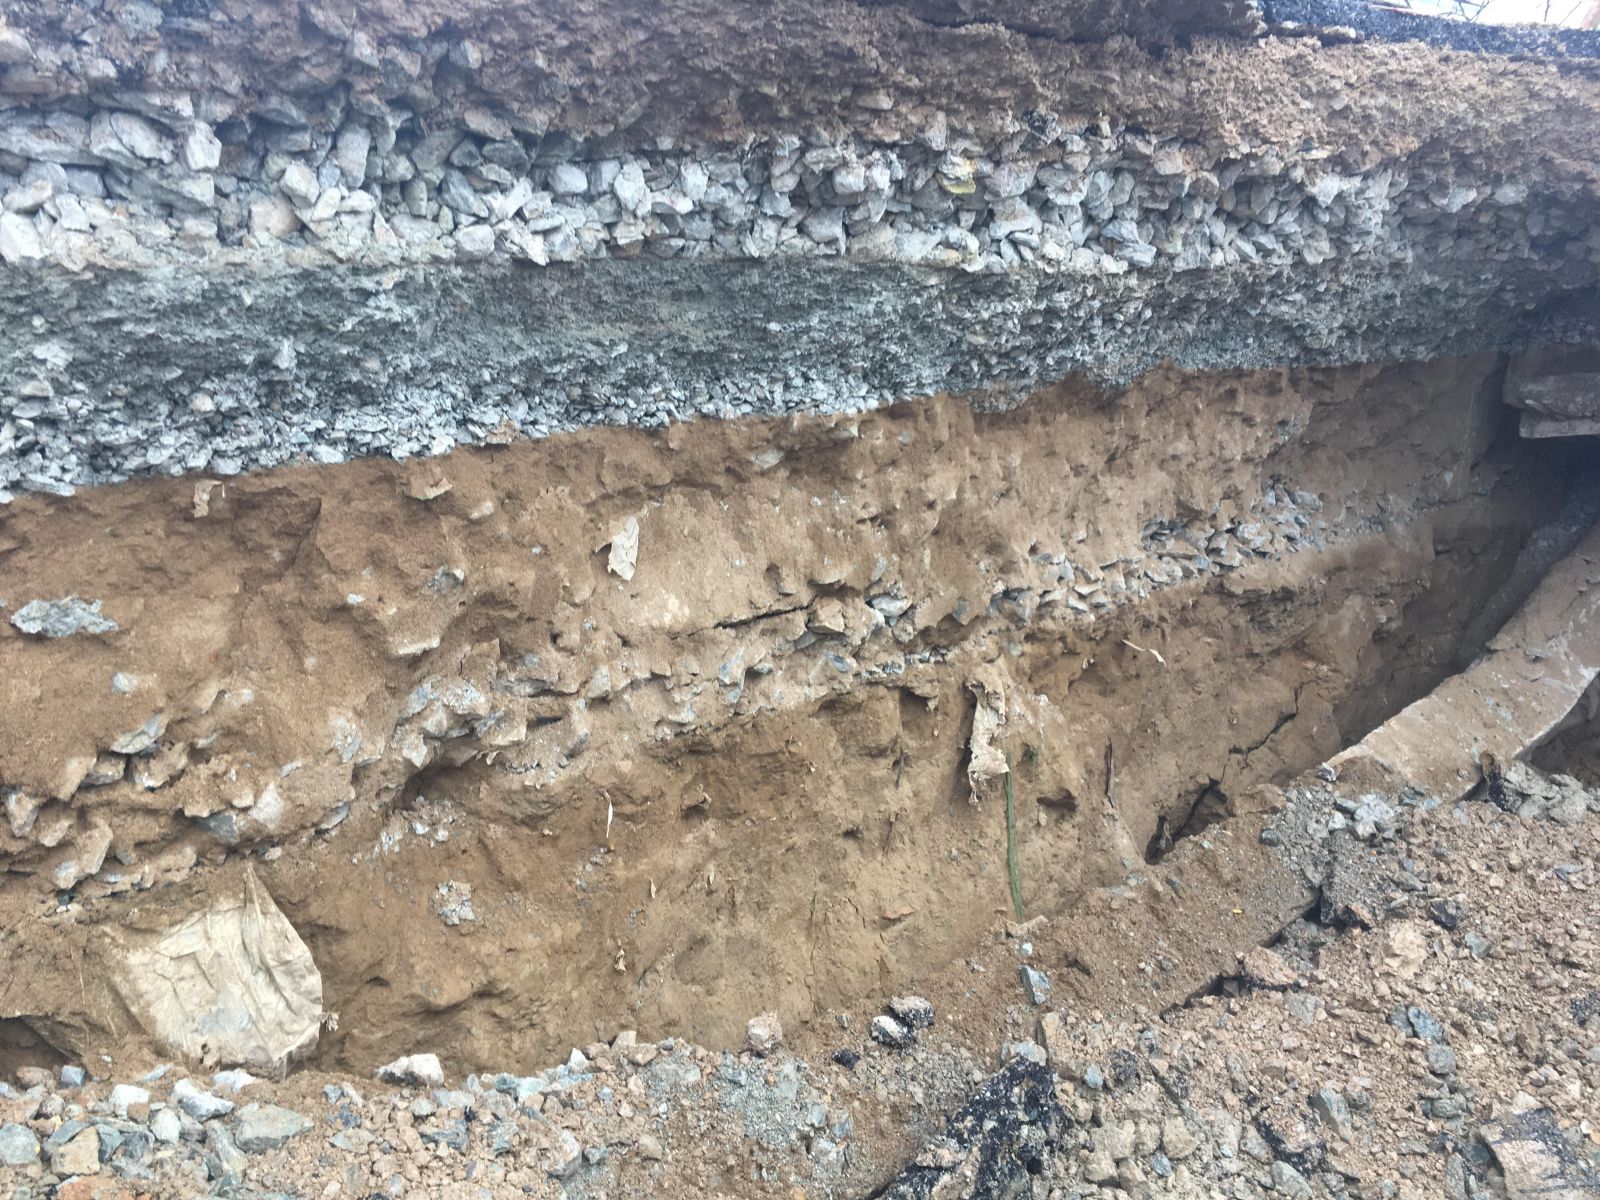 Lớp đá dăm 3x4 được nhà thầu tận dụng đổ trực tiếp dầm bê tông dài khoảng 8m, phía dưới cùng là đất cát. Điều này cho thấy việc nước mưa thẩm thấu dẫn đến lún sập là điều không thể tránh khỏi.  